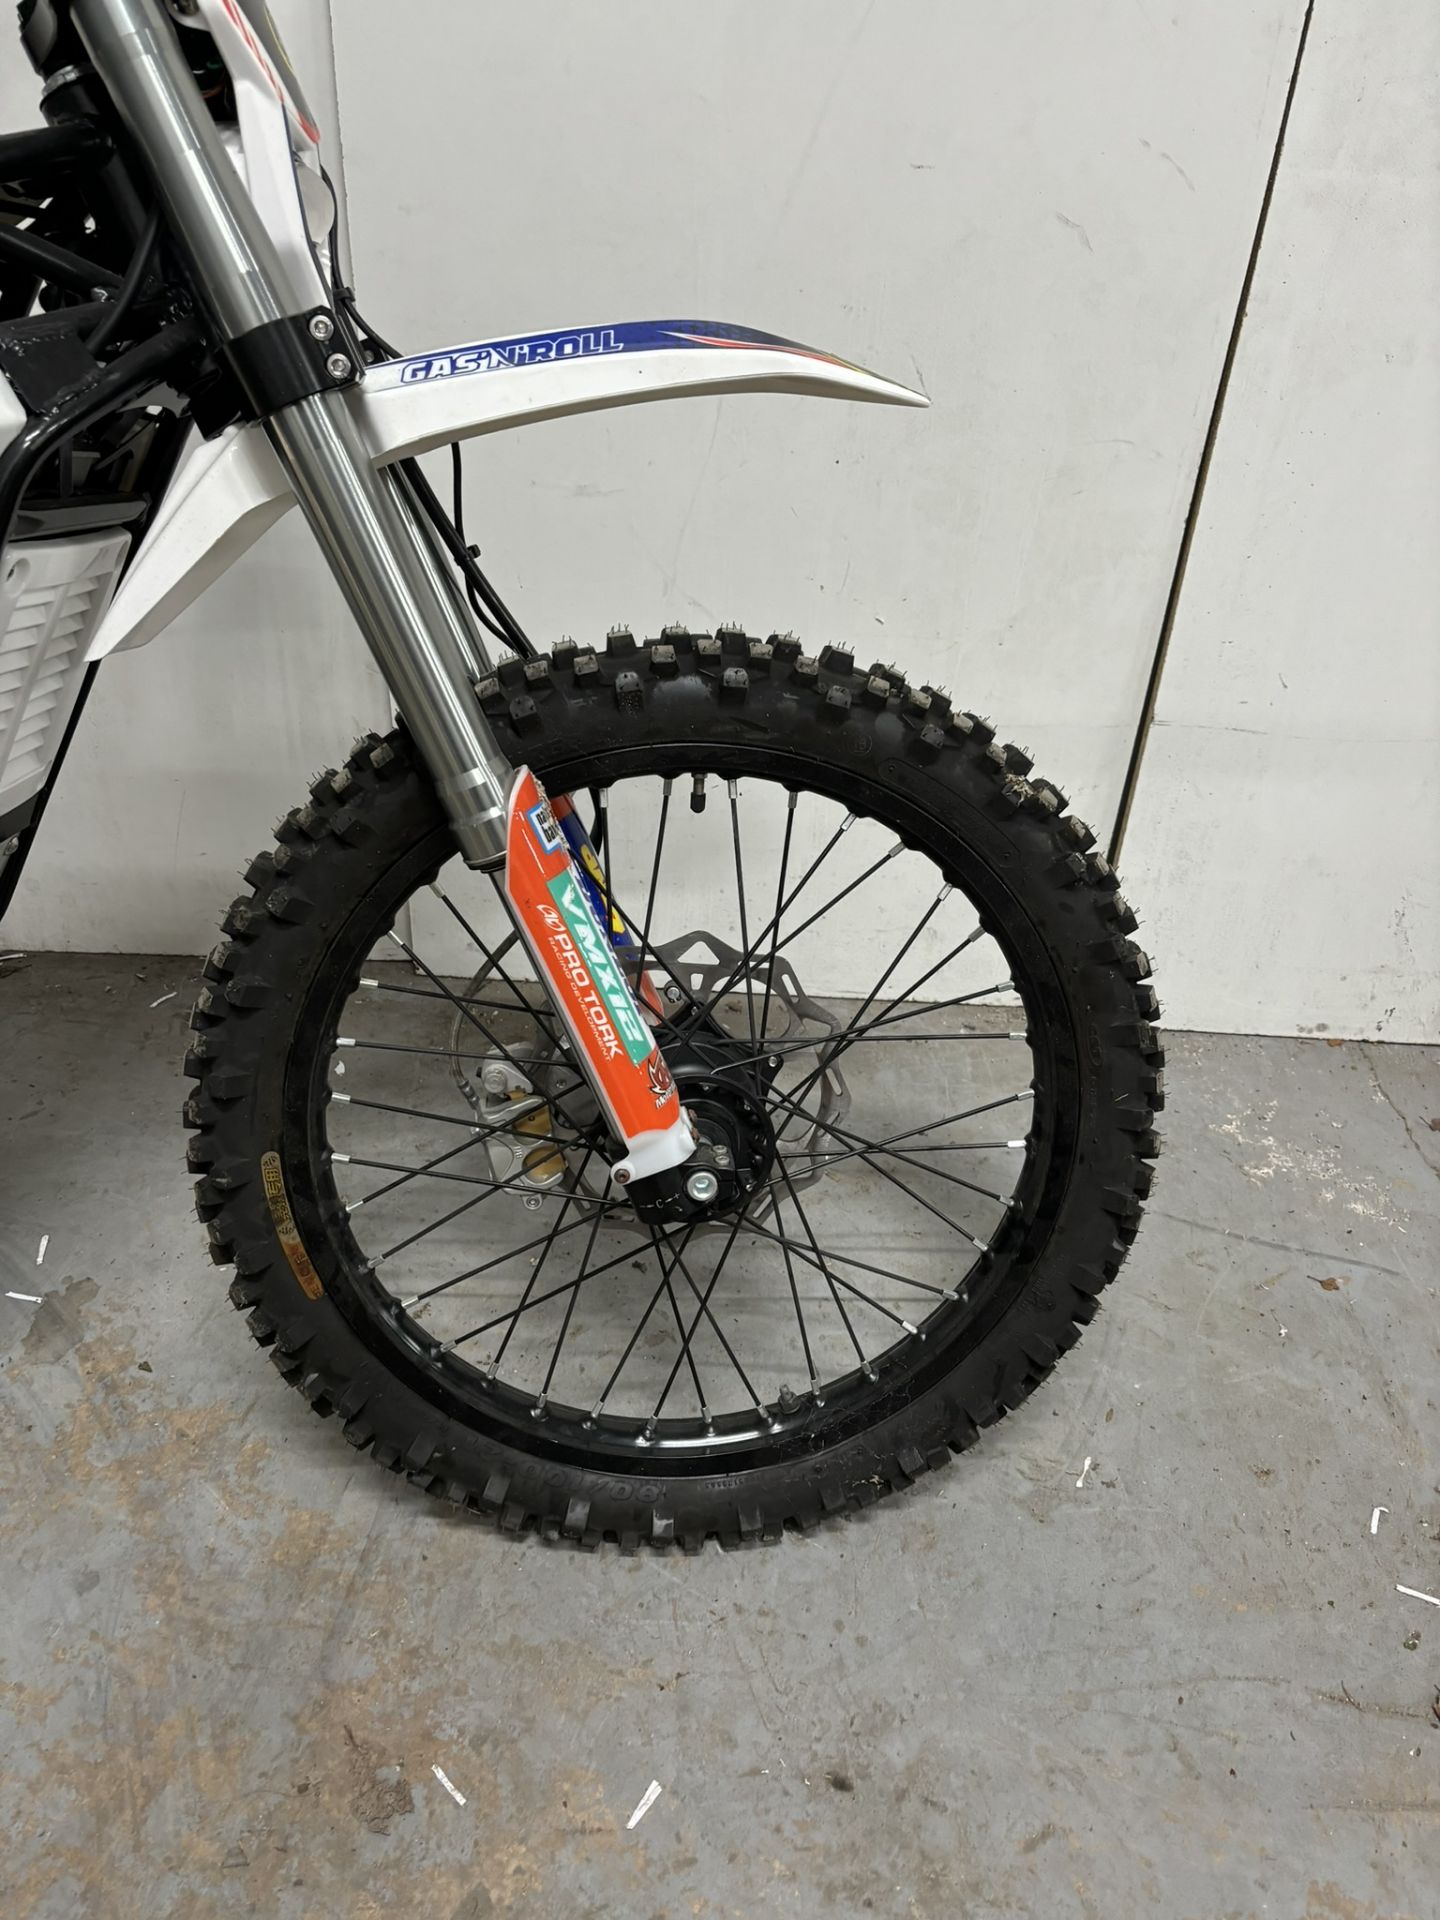 Velimotor VMX12 Electric Motorcycle / Dirt Bike - Image 13 of 24